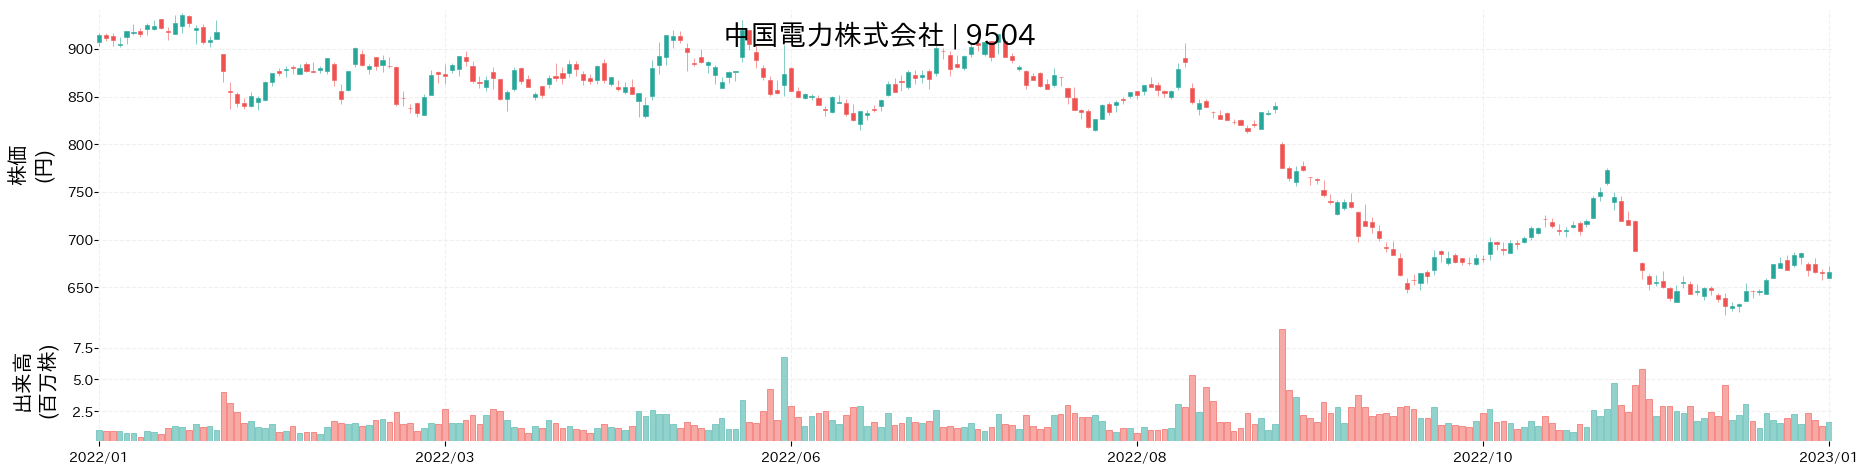 中国電力の株価推移(2022)